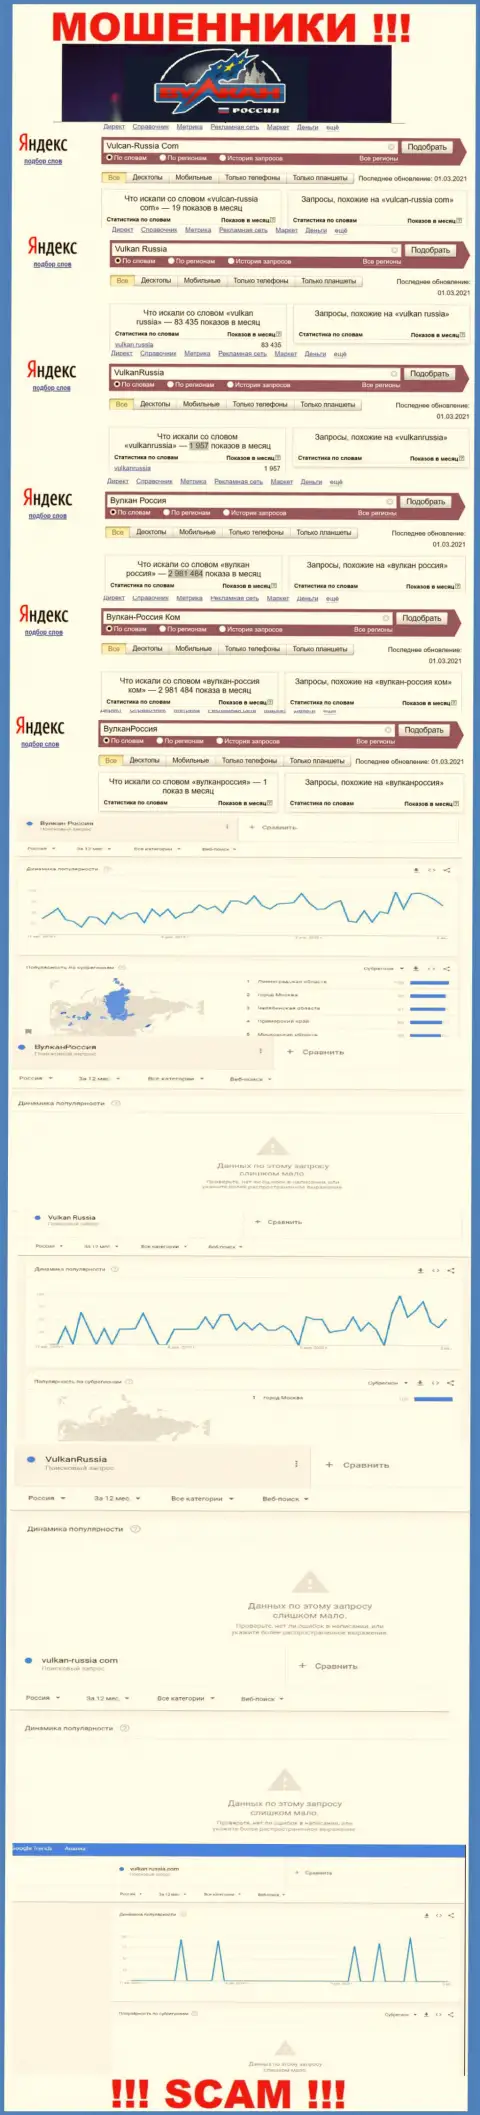 Статистические данные количества обзоров информации о мошенниках Vulkan Russia в сети интернет